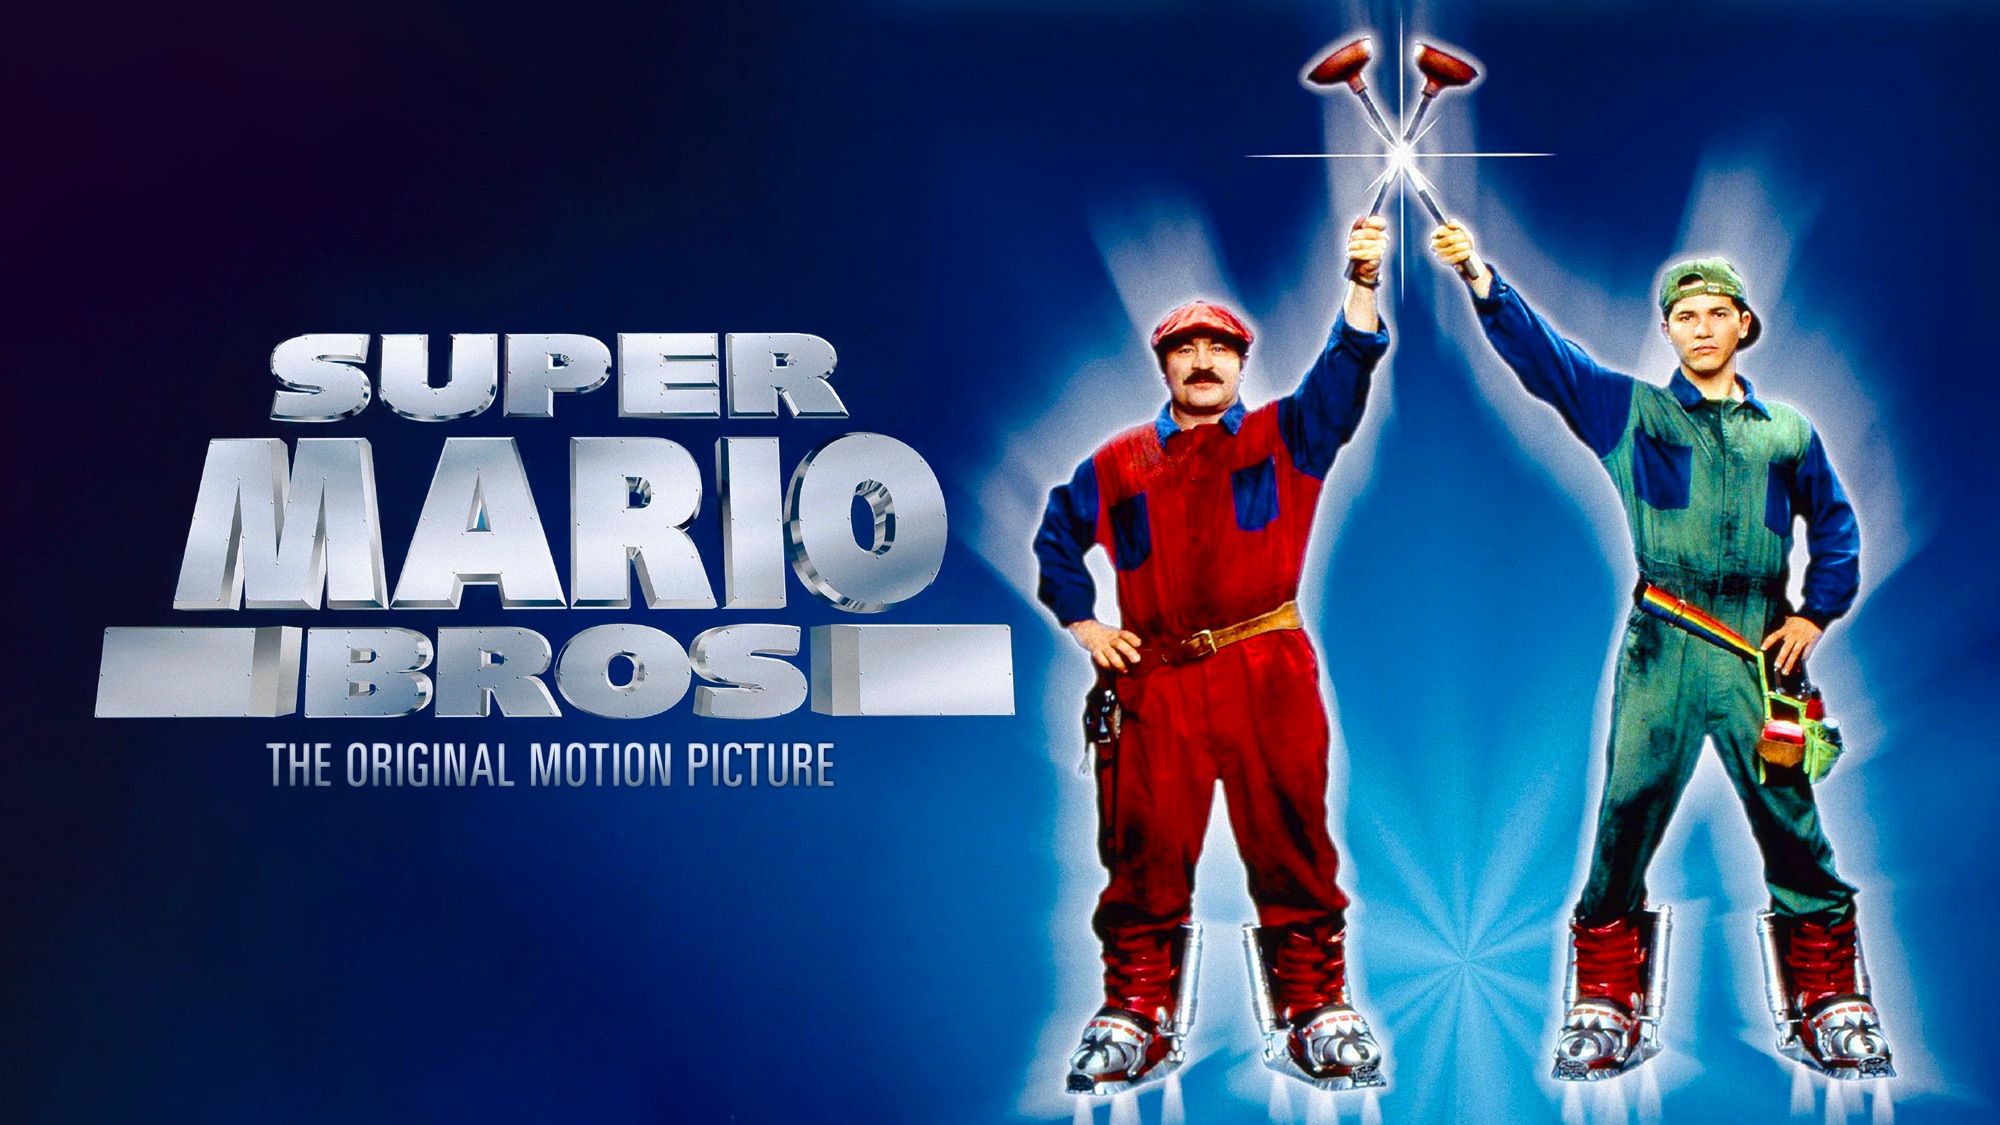 Скачать обои бесплатно Кино, Марио, Супербратья Марио картинка на рабочий стол ПК